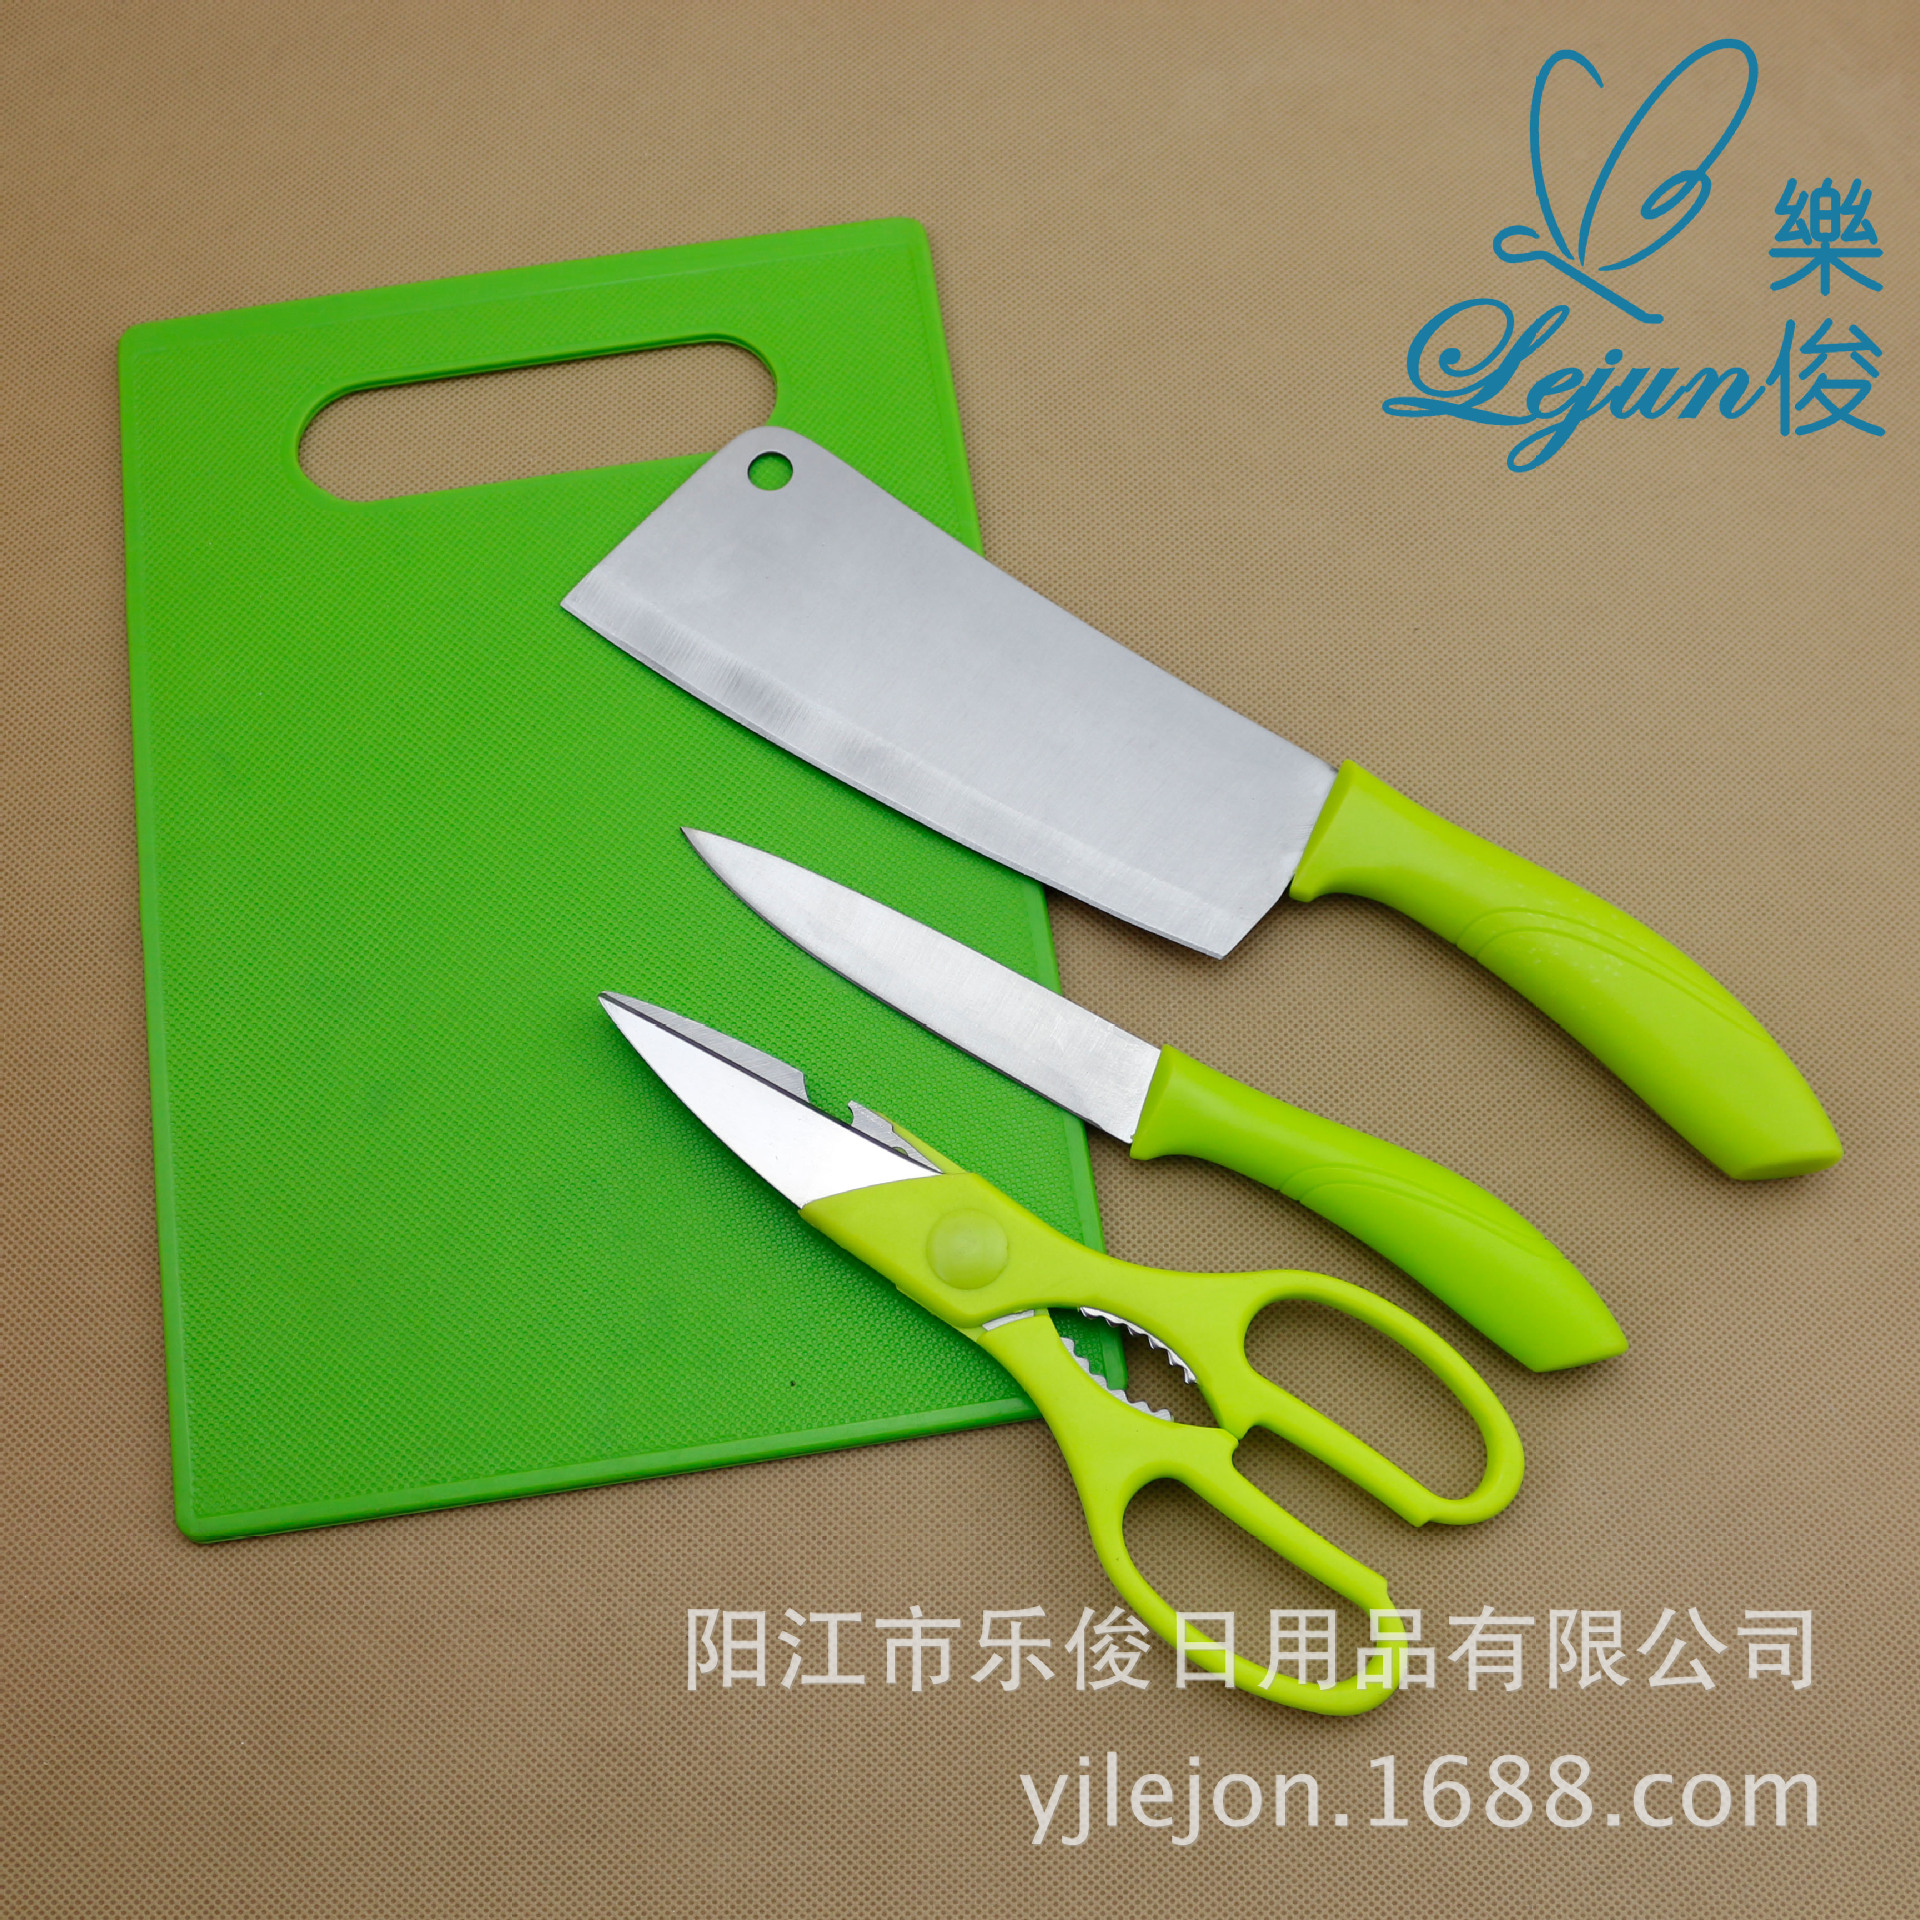 家居用品,母婴,玩具 厨房用品 厨用刀具 厨用菜刀 绿色塑料柄不锈钢